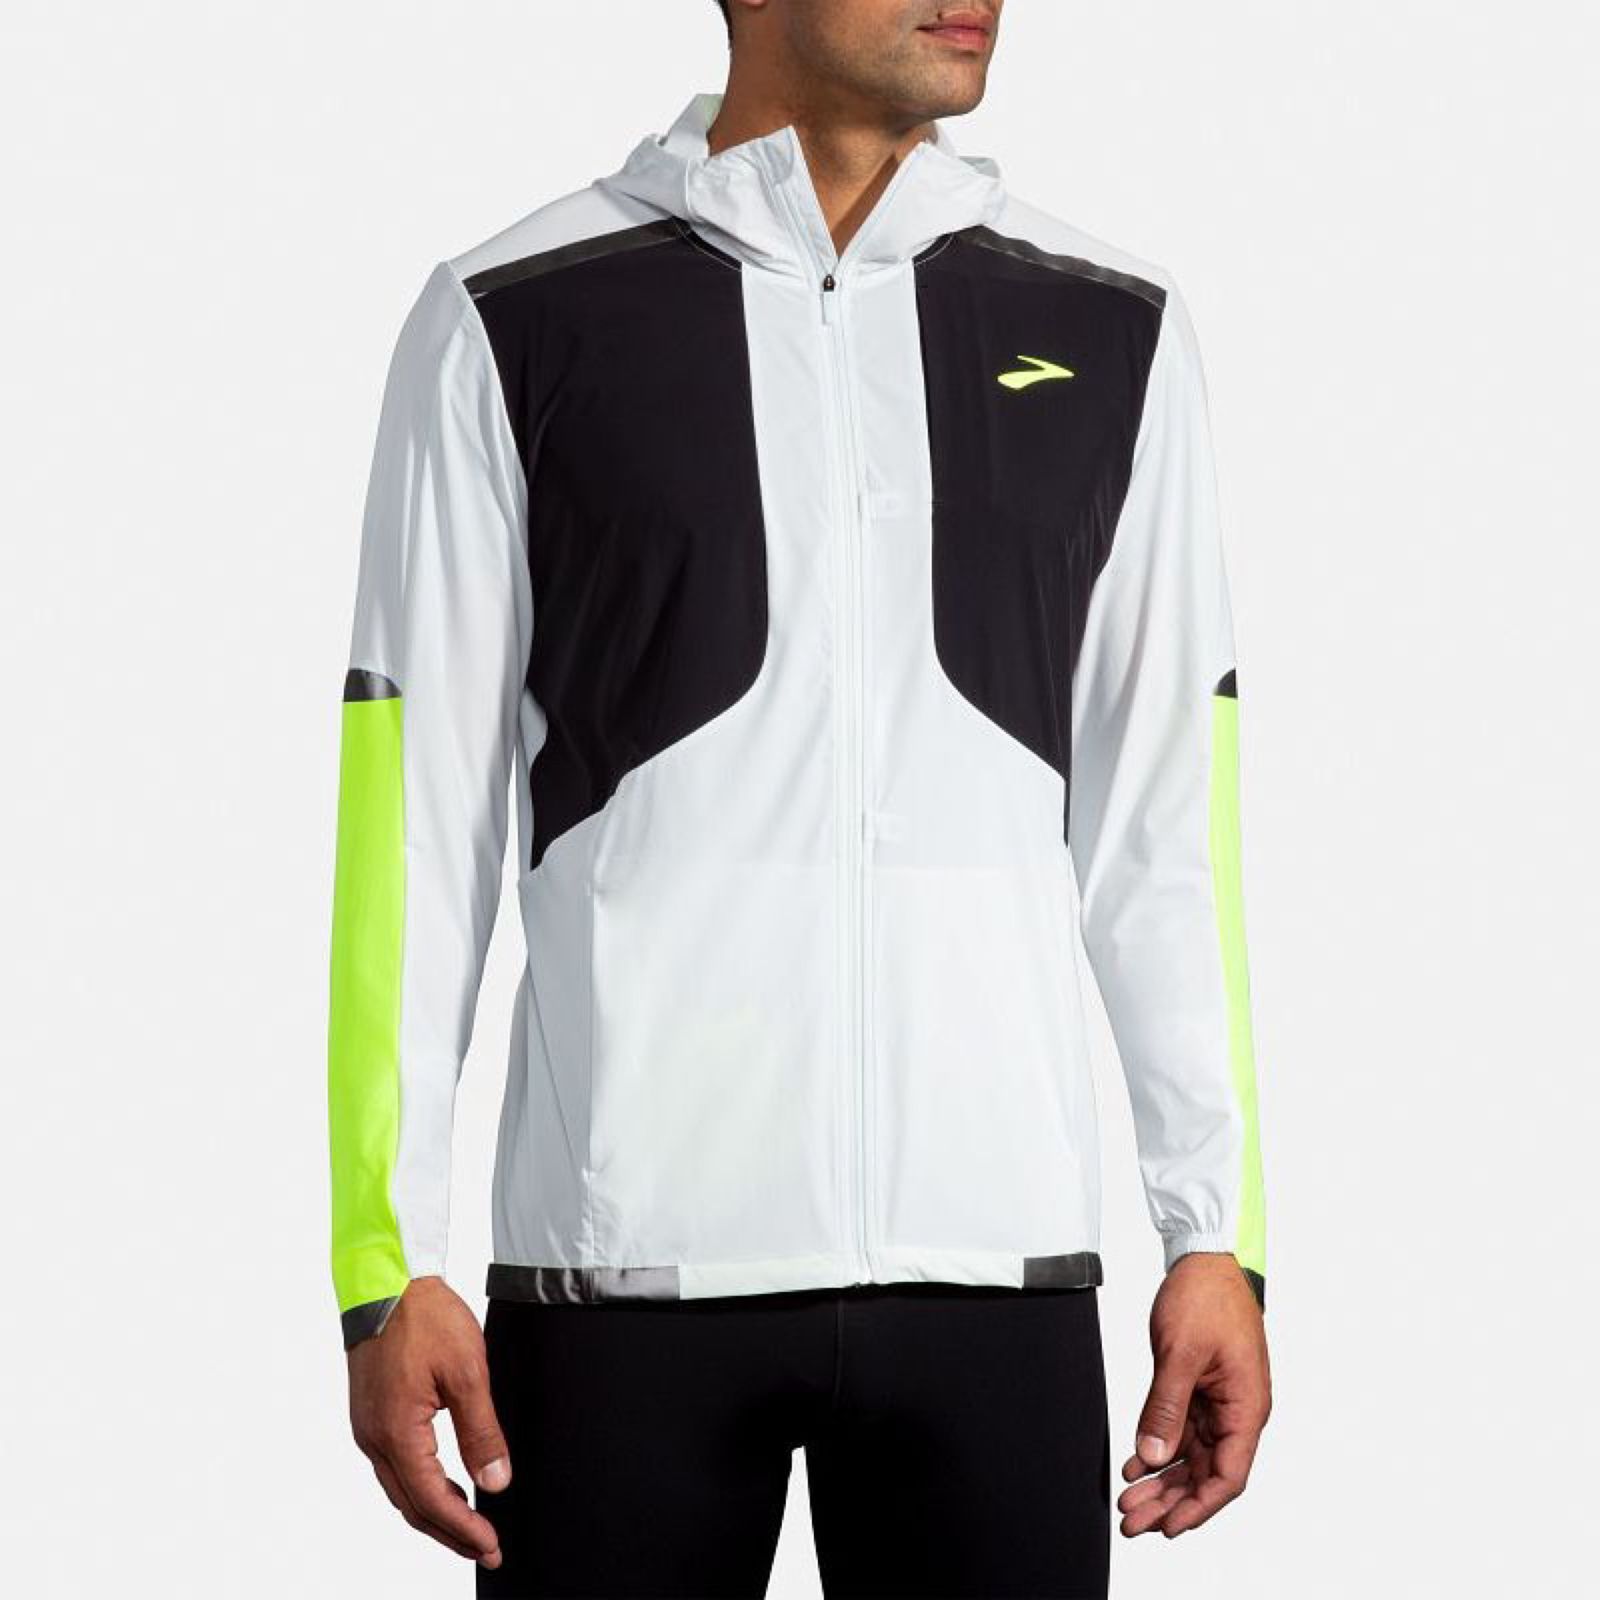 سویشرت ورزشی مردانه بروکس مدل Carbonite Jacket